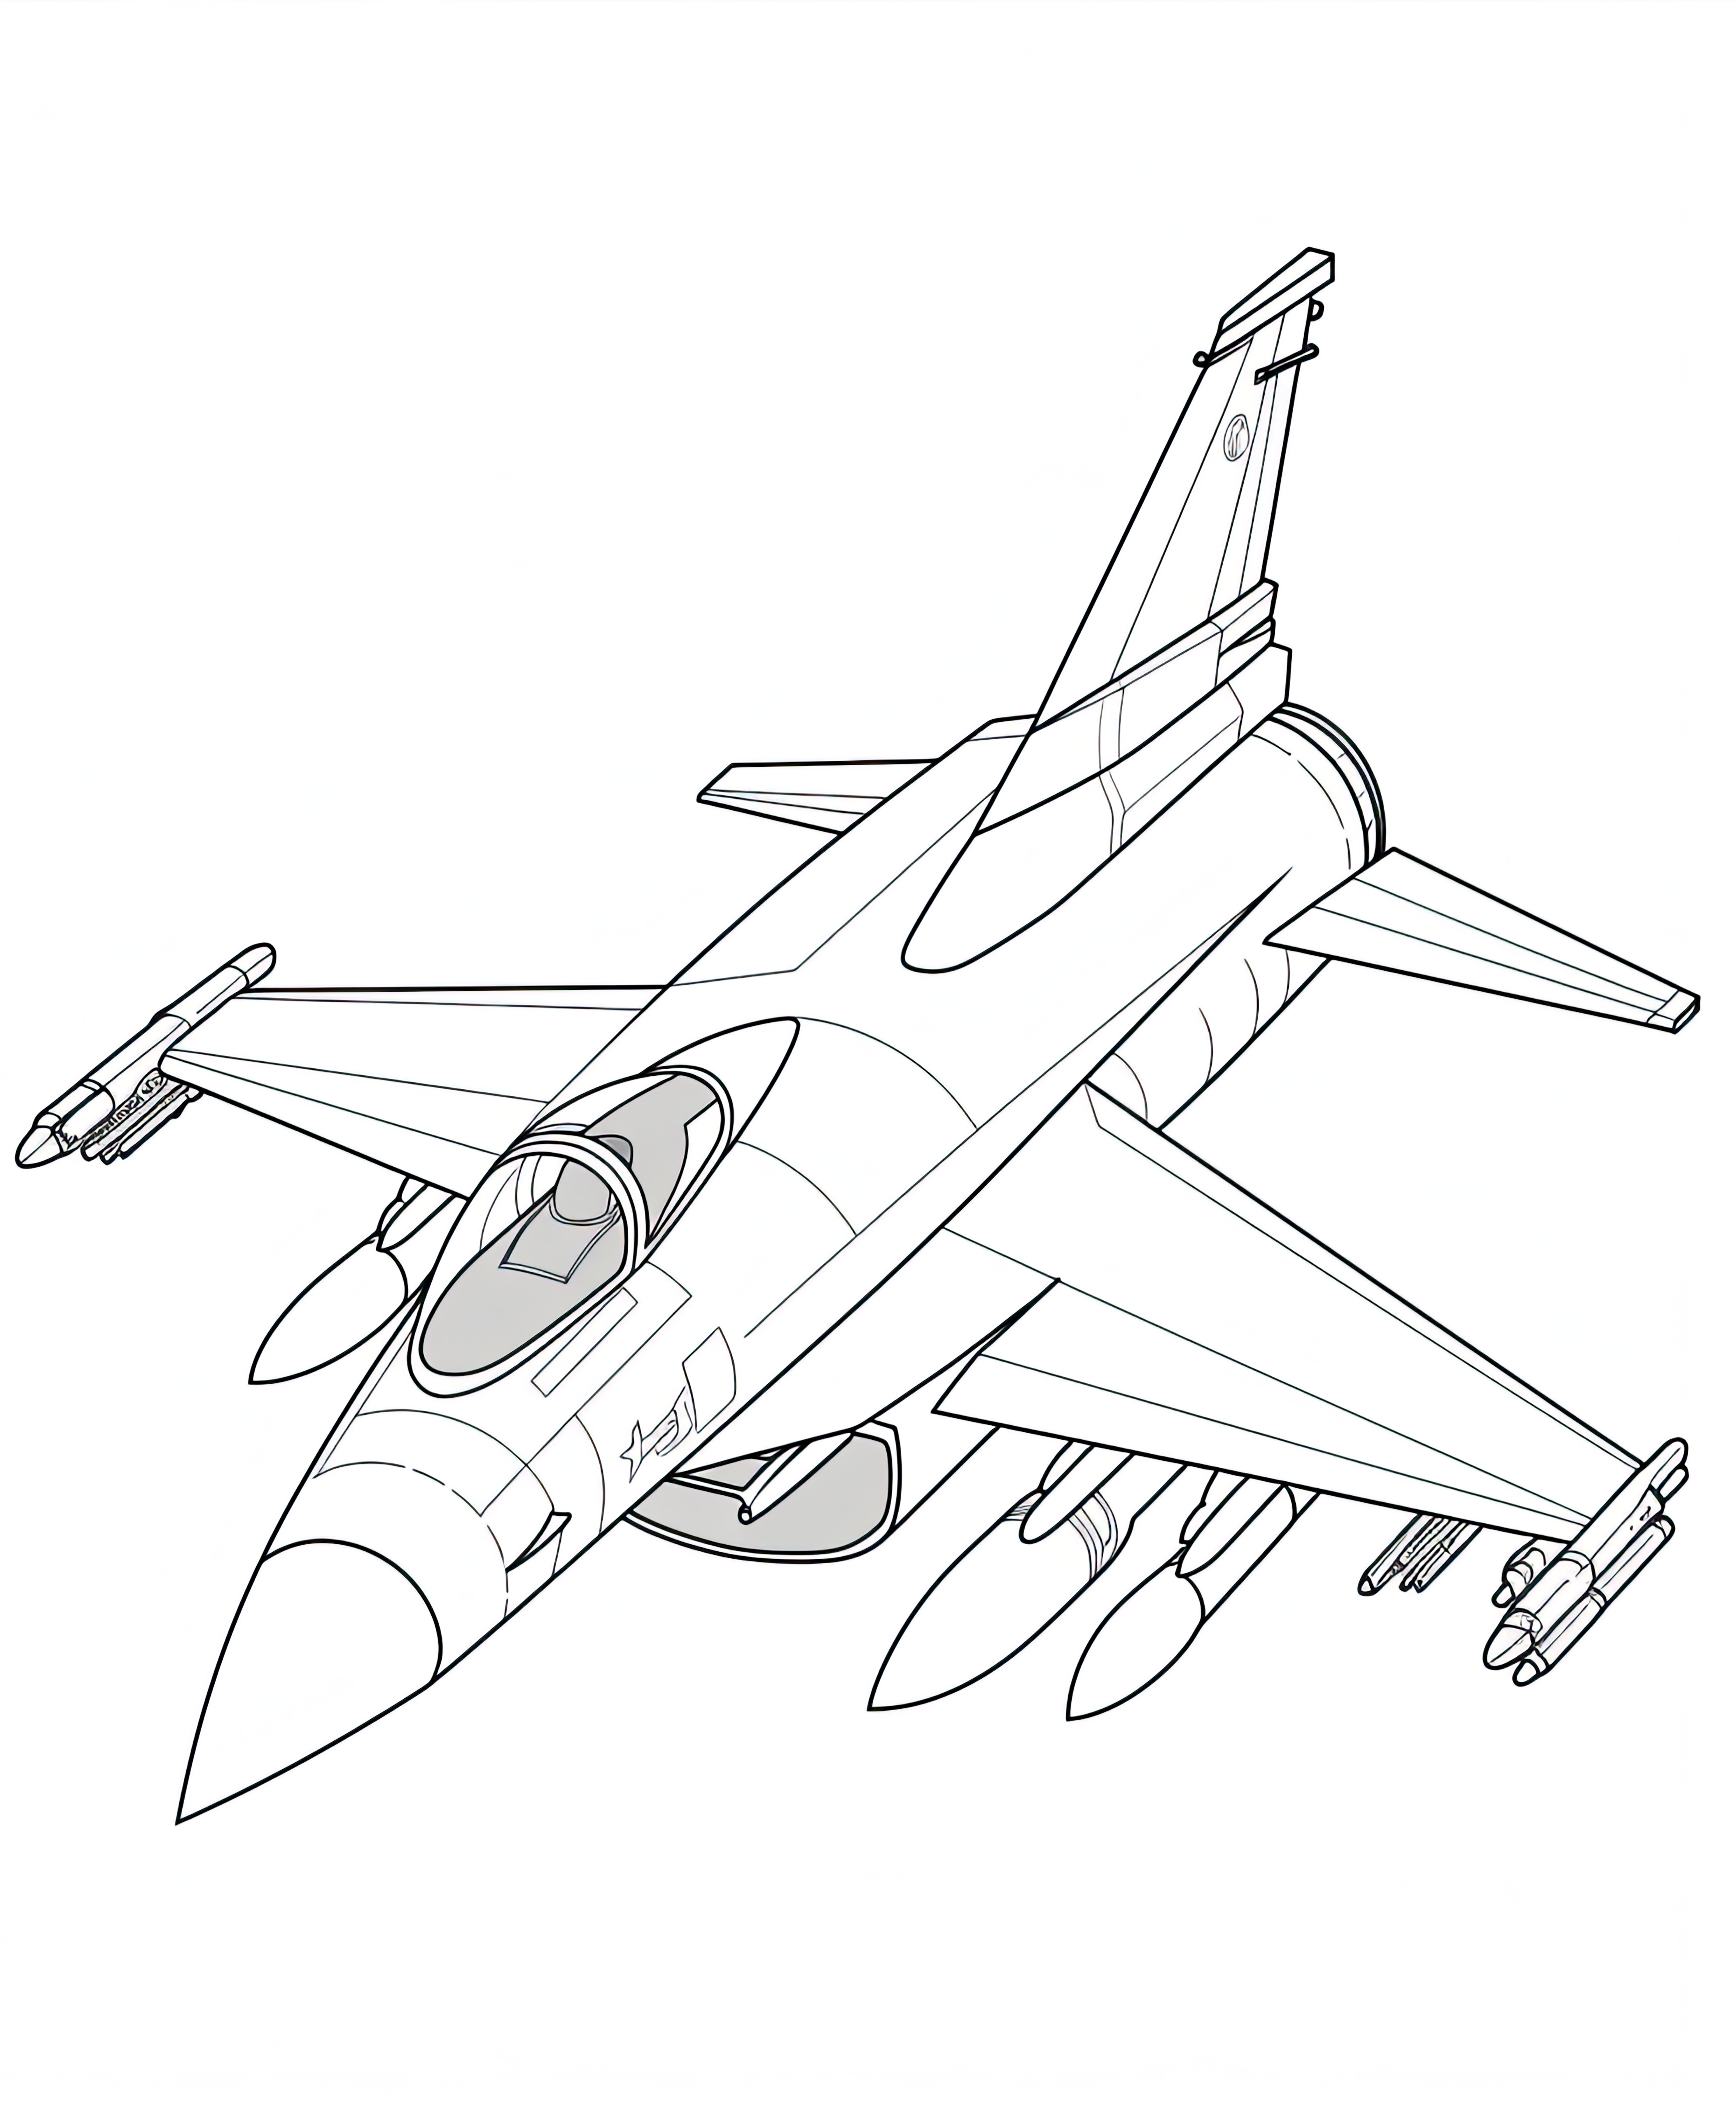 Раскраска боевой истребитель формата А4 в высоком качестве